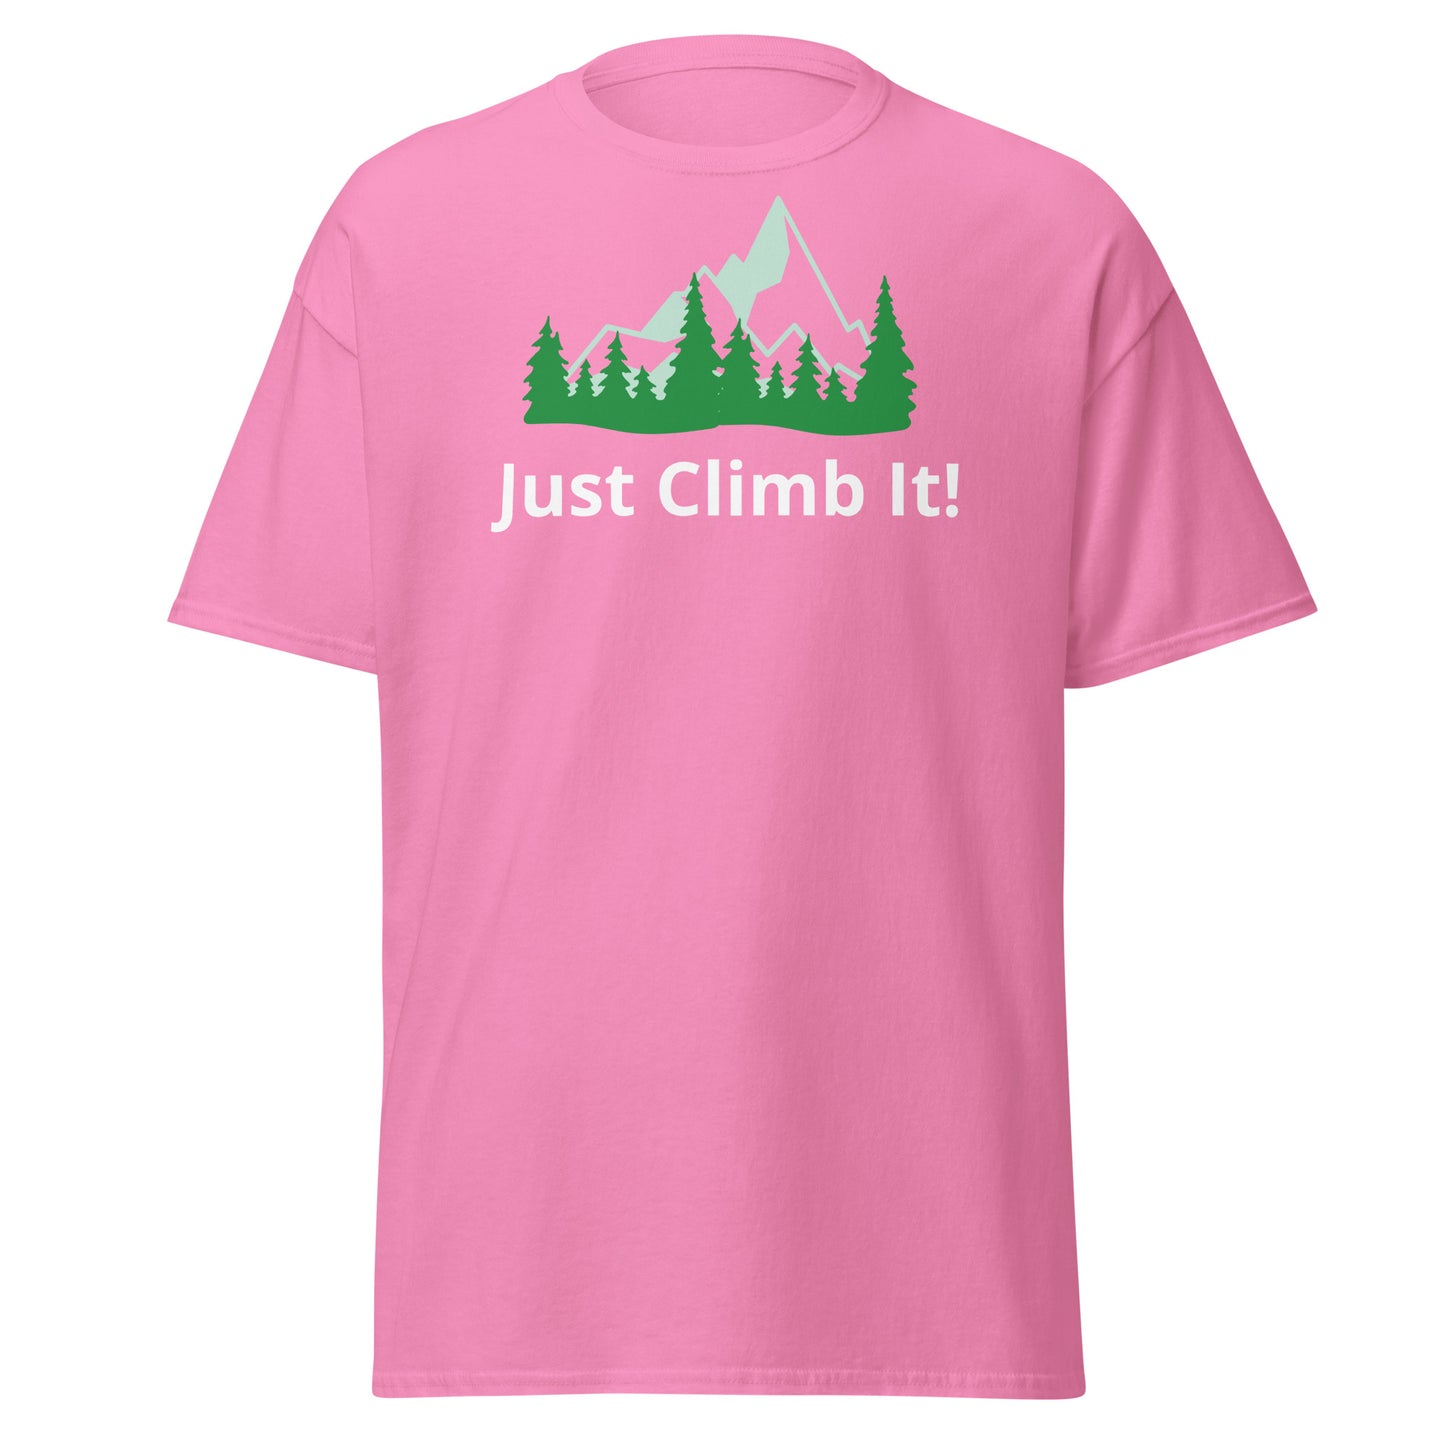 Men's motivational climbing shirt